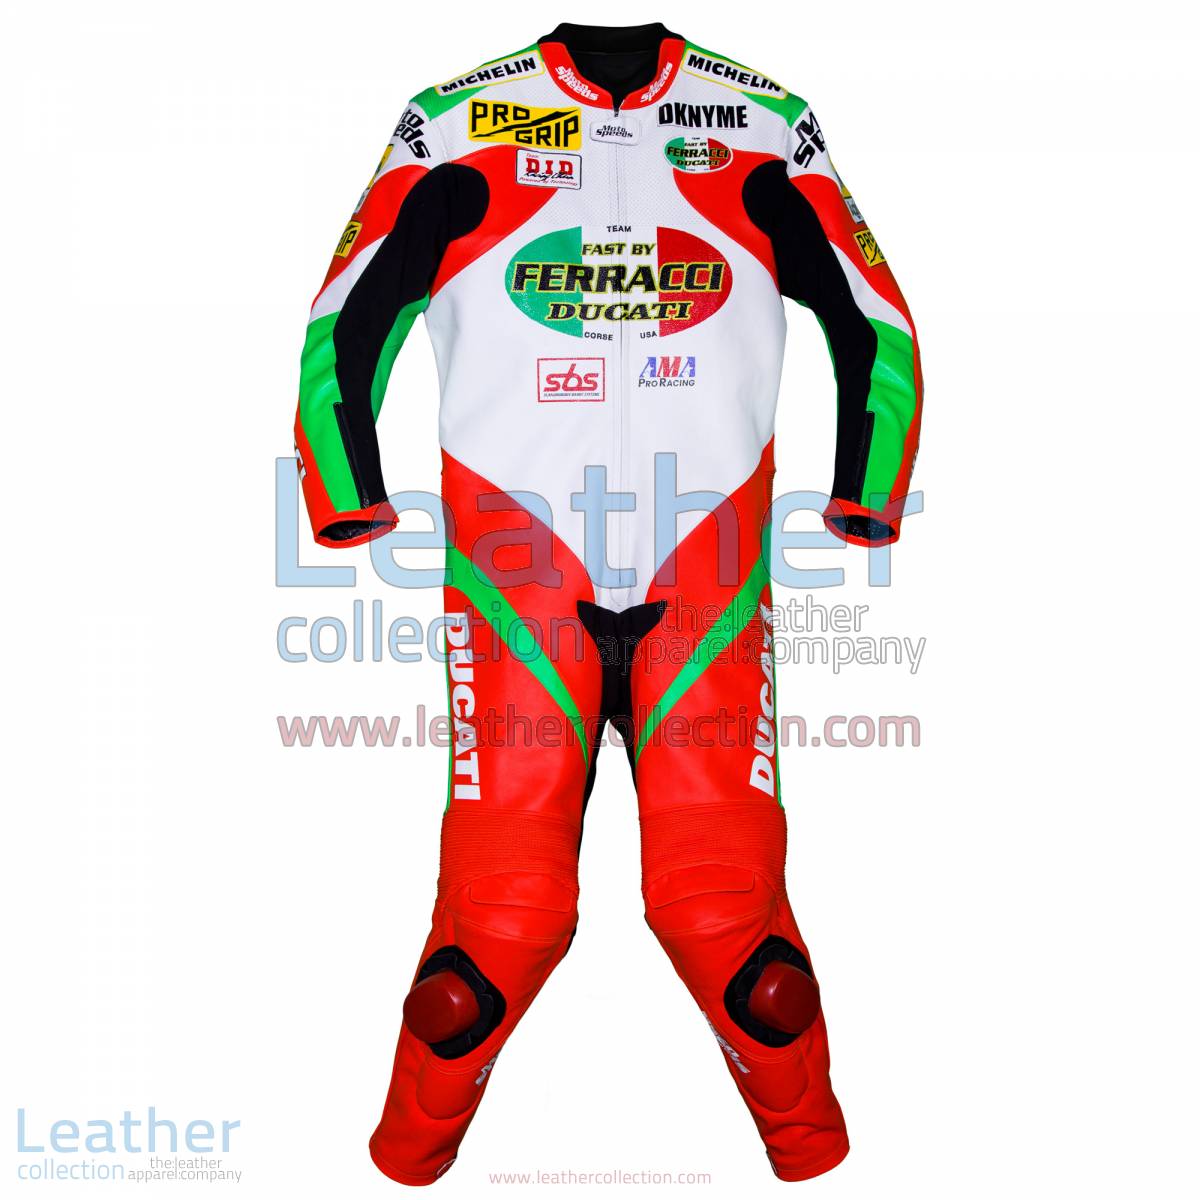 Mat Mladin Ducati AMA Race Suit | ducati race suit